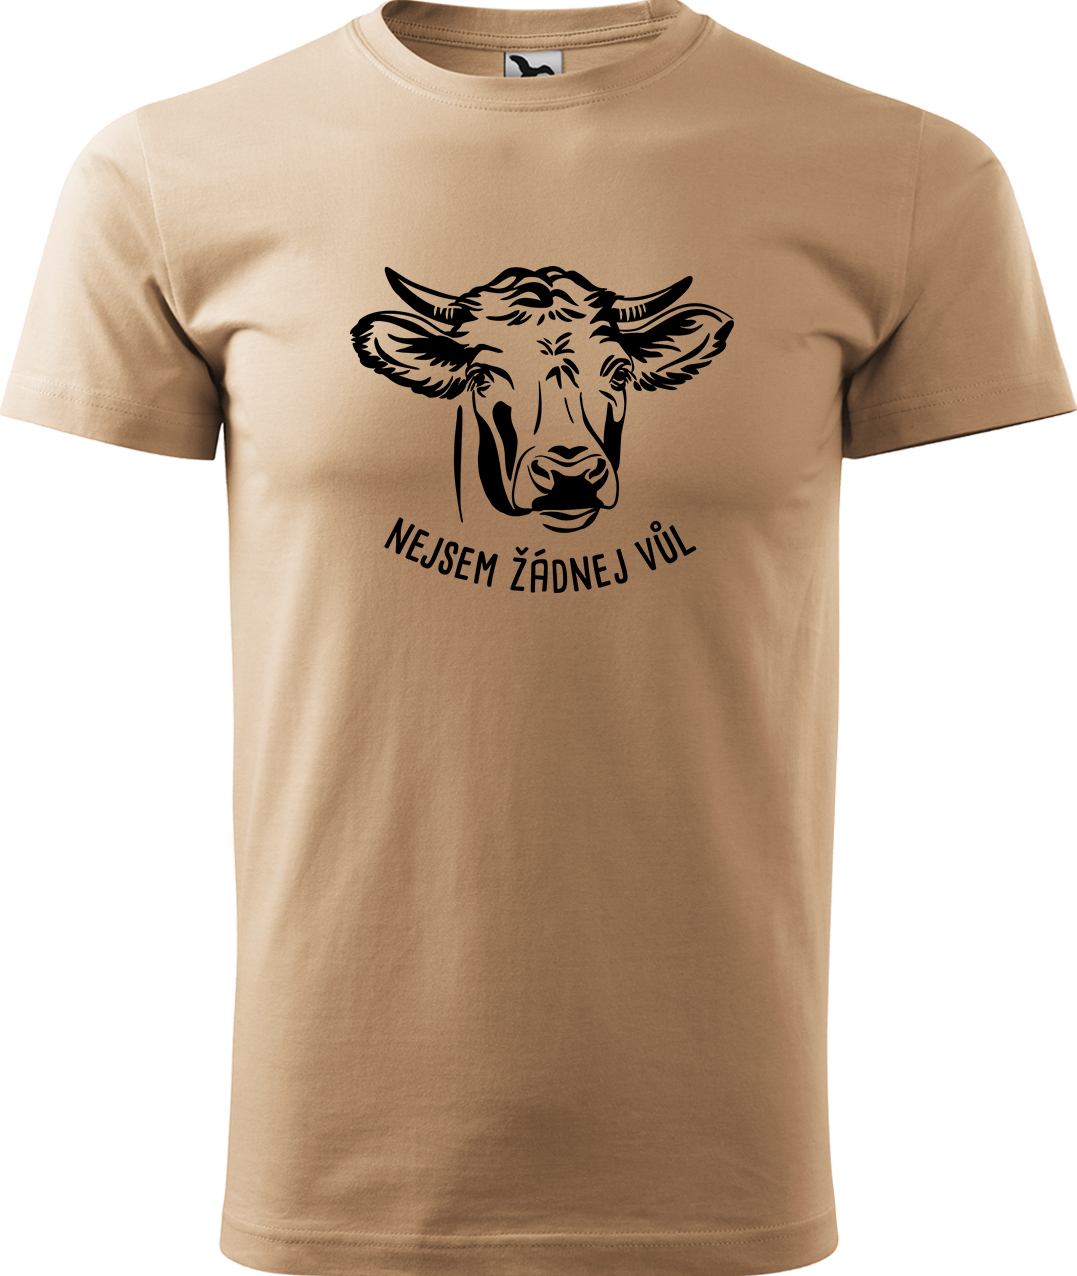 Pánské tričko s krávou - Nejsem žádnej vůl Velikost: XL, Barva: Písková (08), Střih: pánský